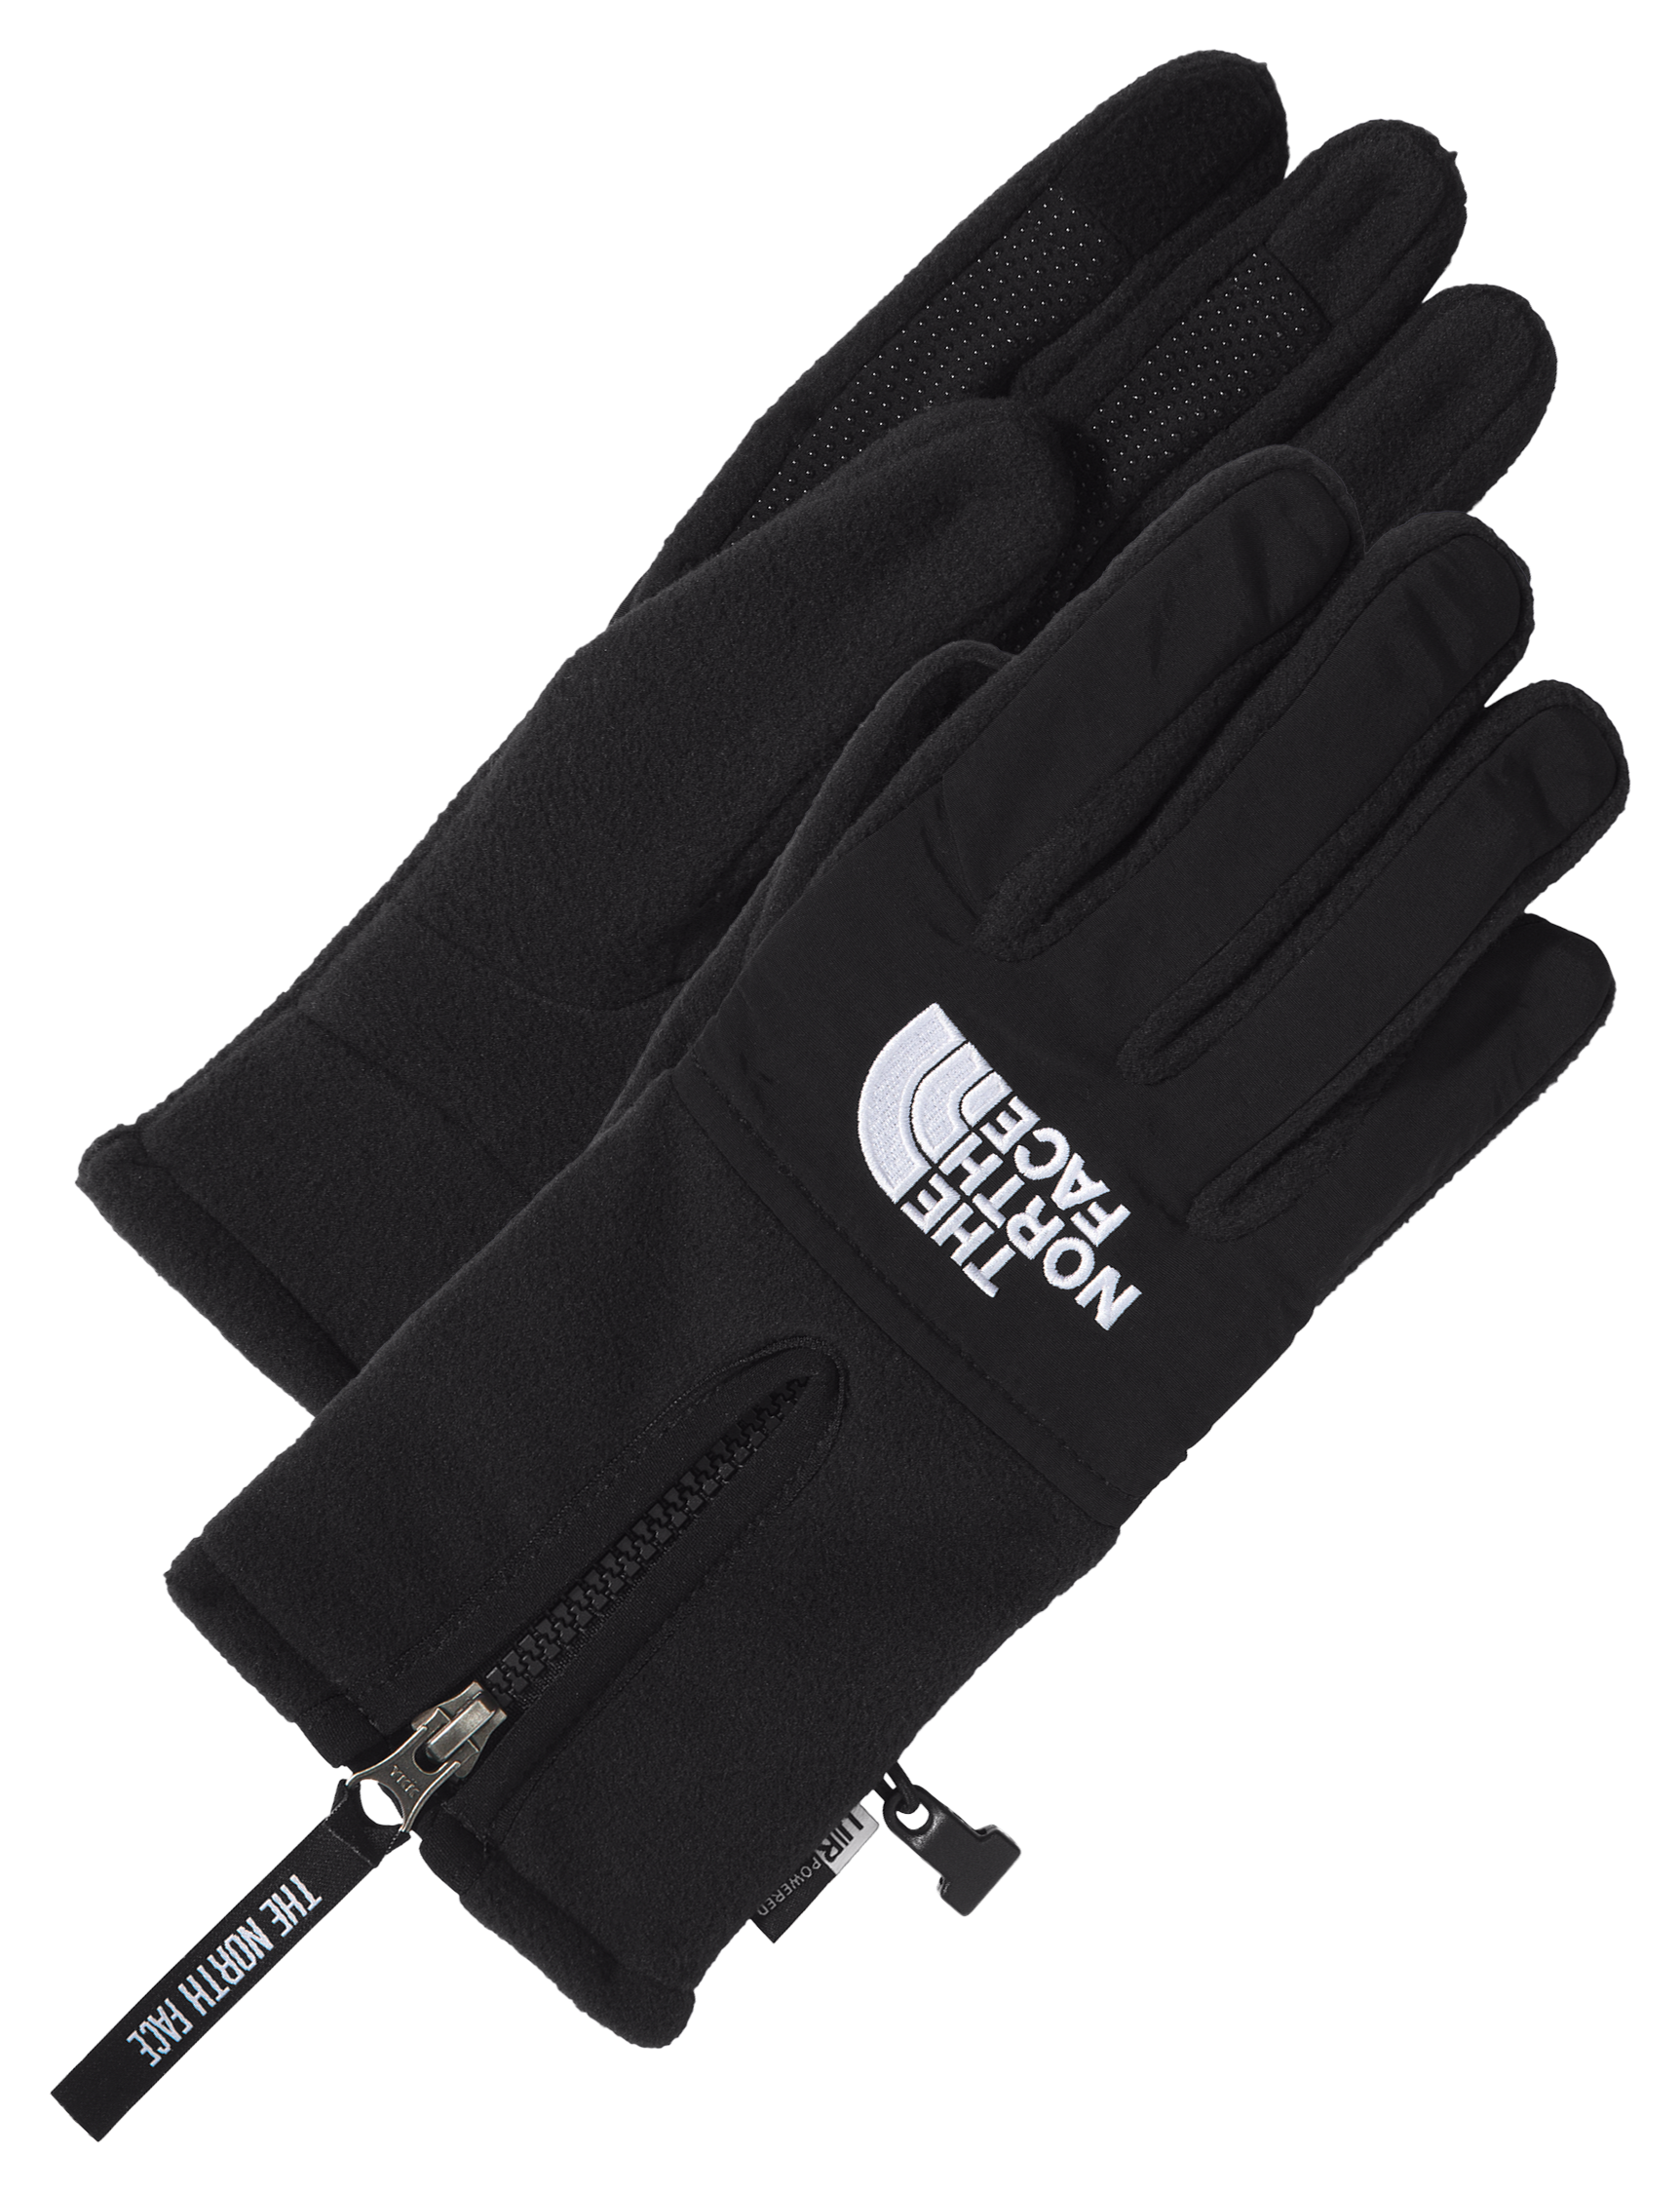 The North Face Denali Etip Back Zip Gloves for Men